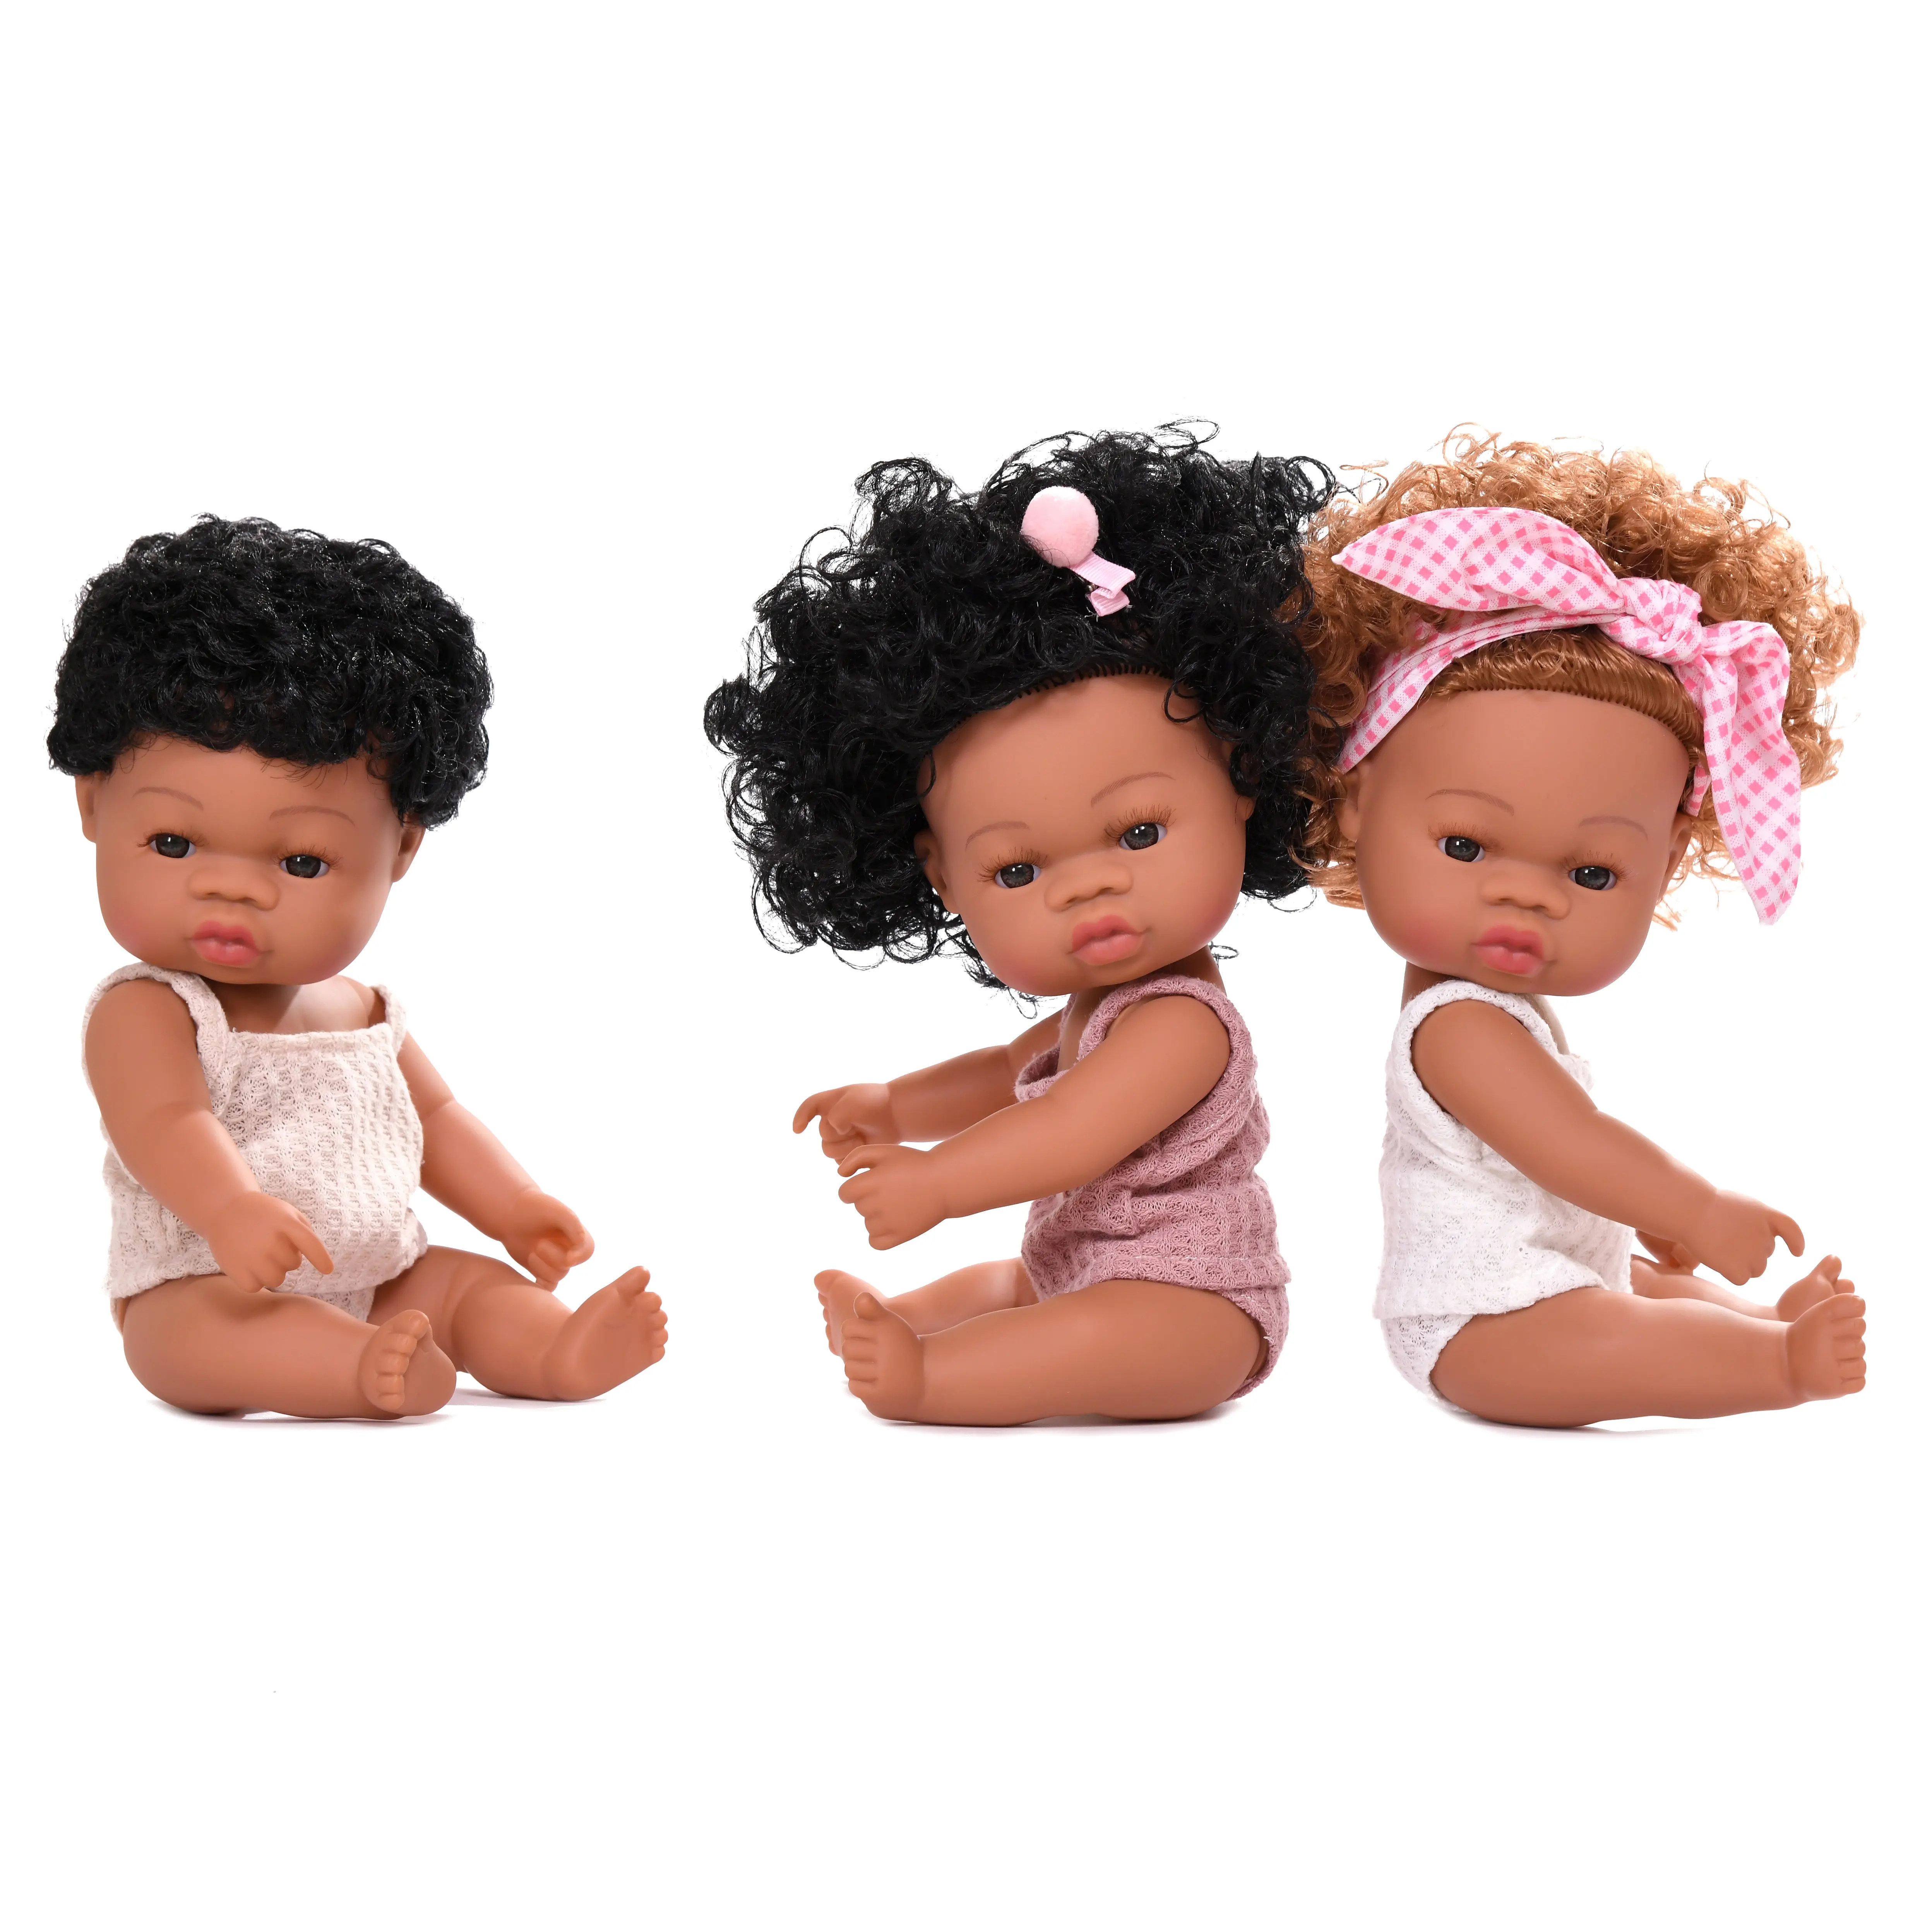 子供のための手作りの全身シリコンリアルな生まれ変わったビニールシリコンベビー人形黒アフリカ人形